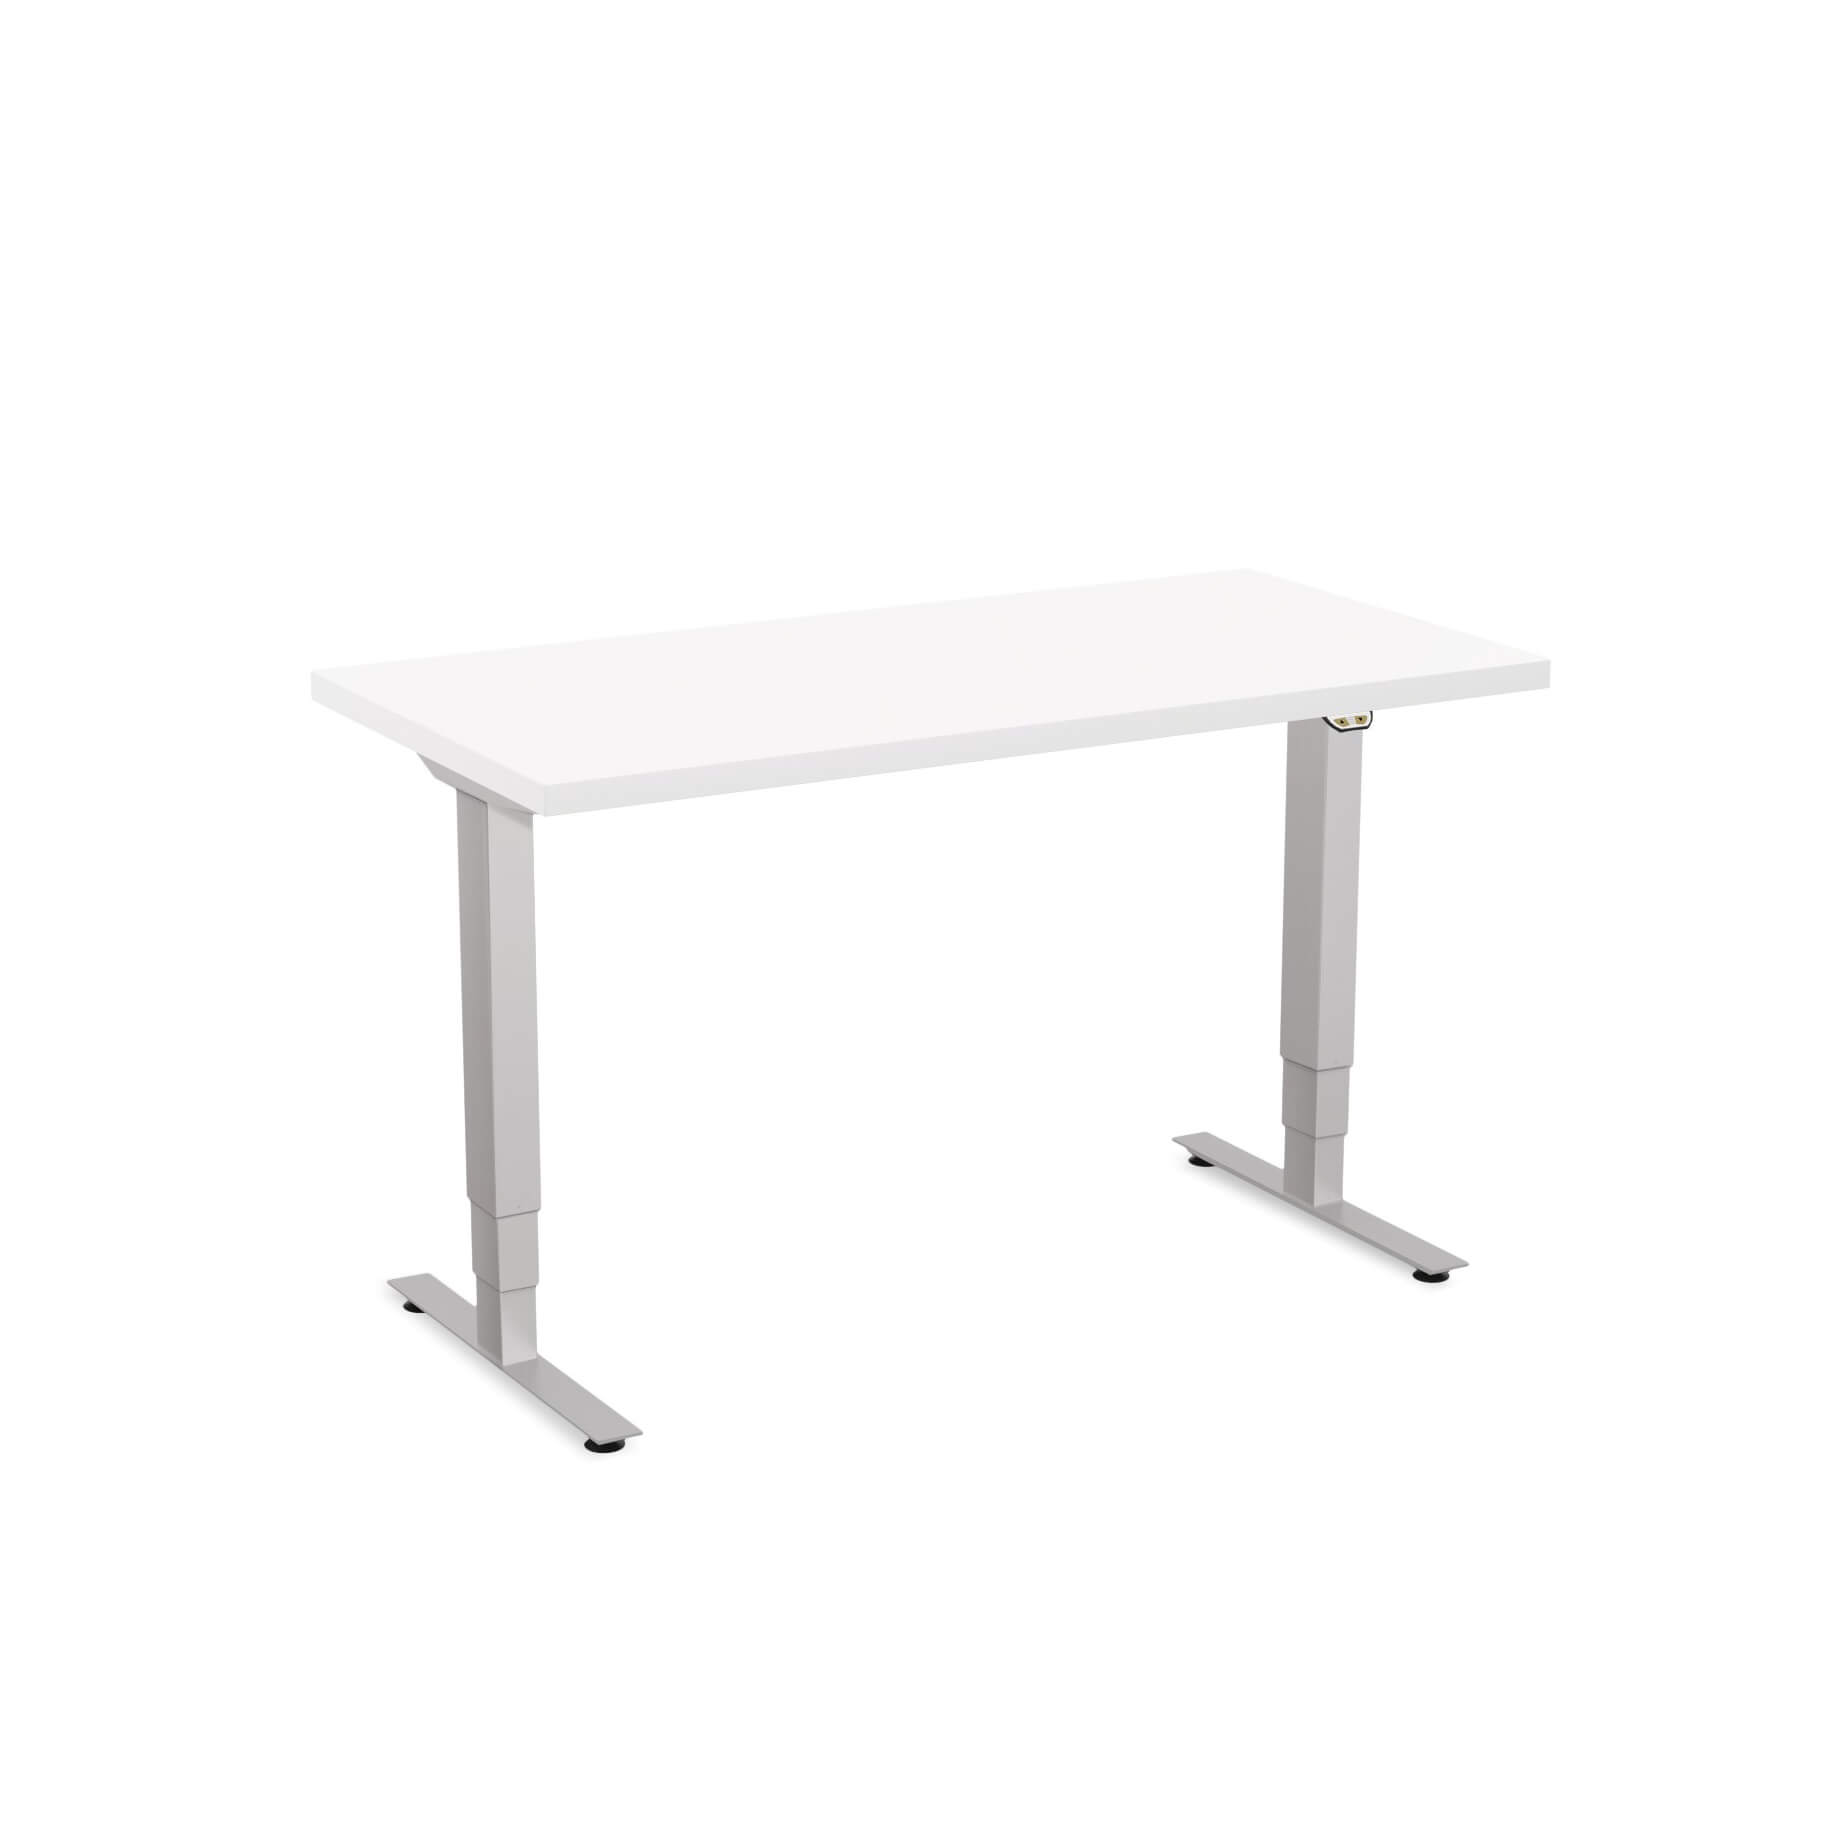 Sit stand desk adjustable CUB 1D PATR 2448 WH EPS 1